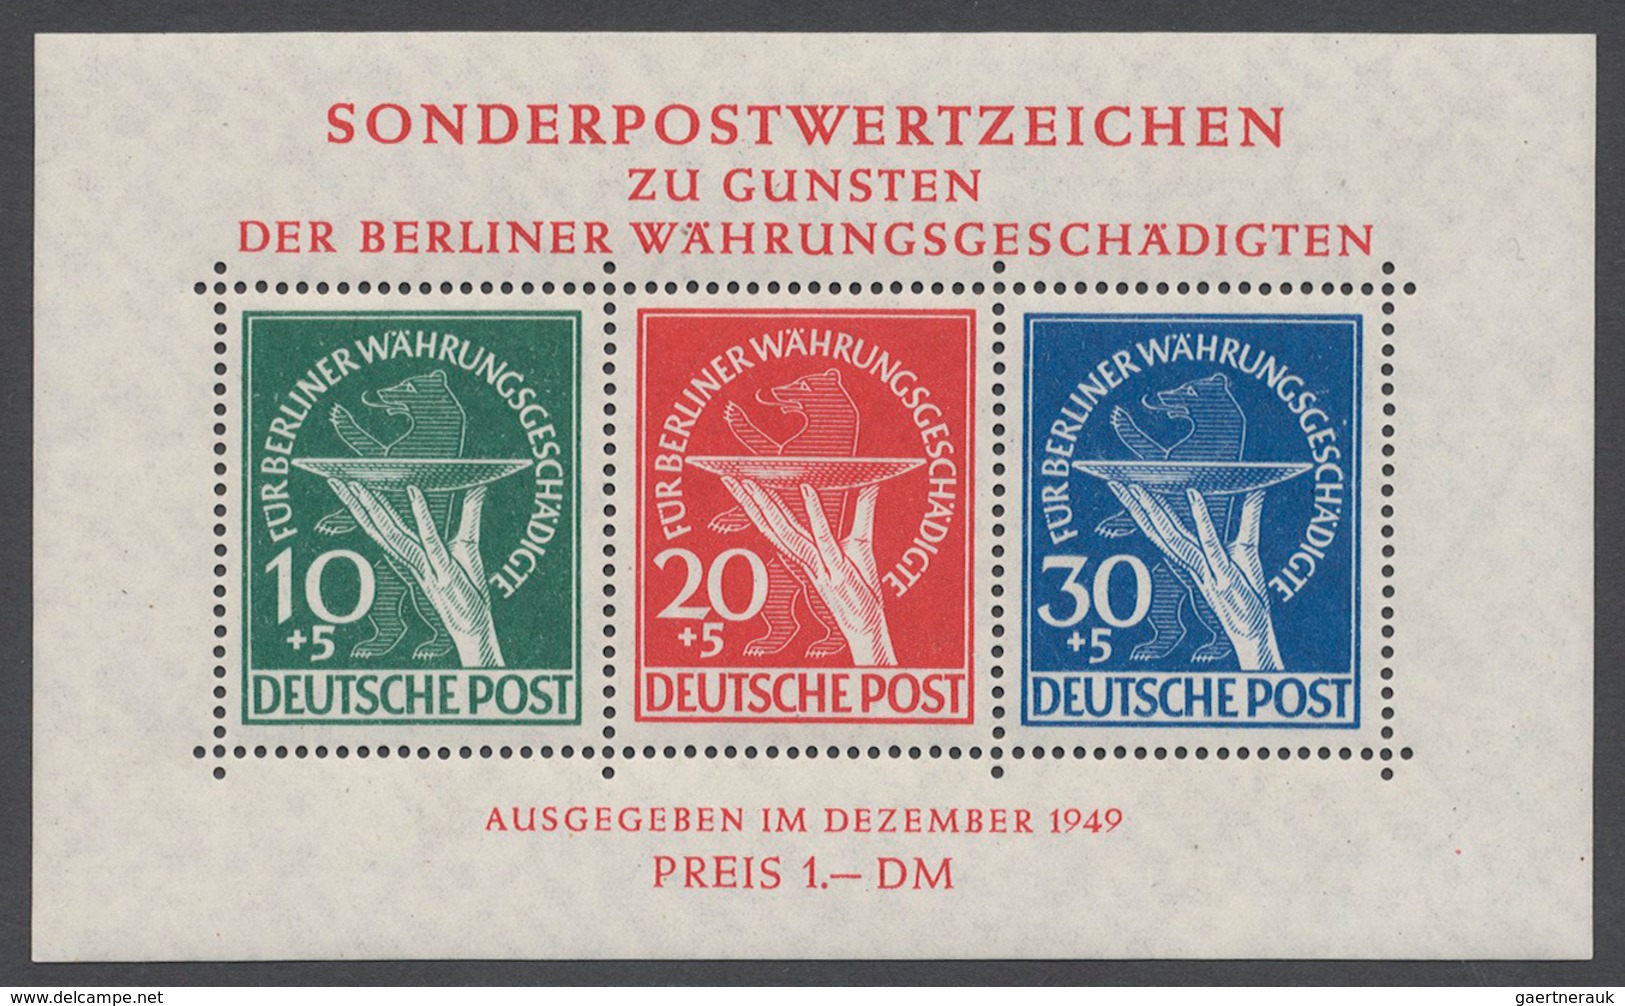 Bundesrepublik und Berlin: 1945/2000, Bizone/Bund/Berlin großer Lagerbestand mit etwas DDR, etwa übe